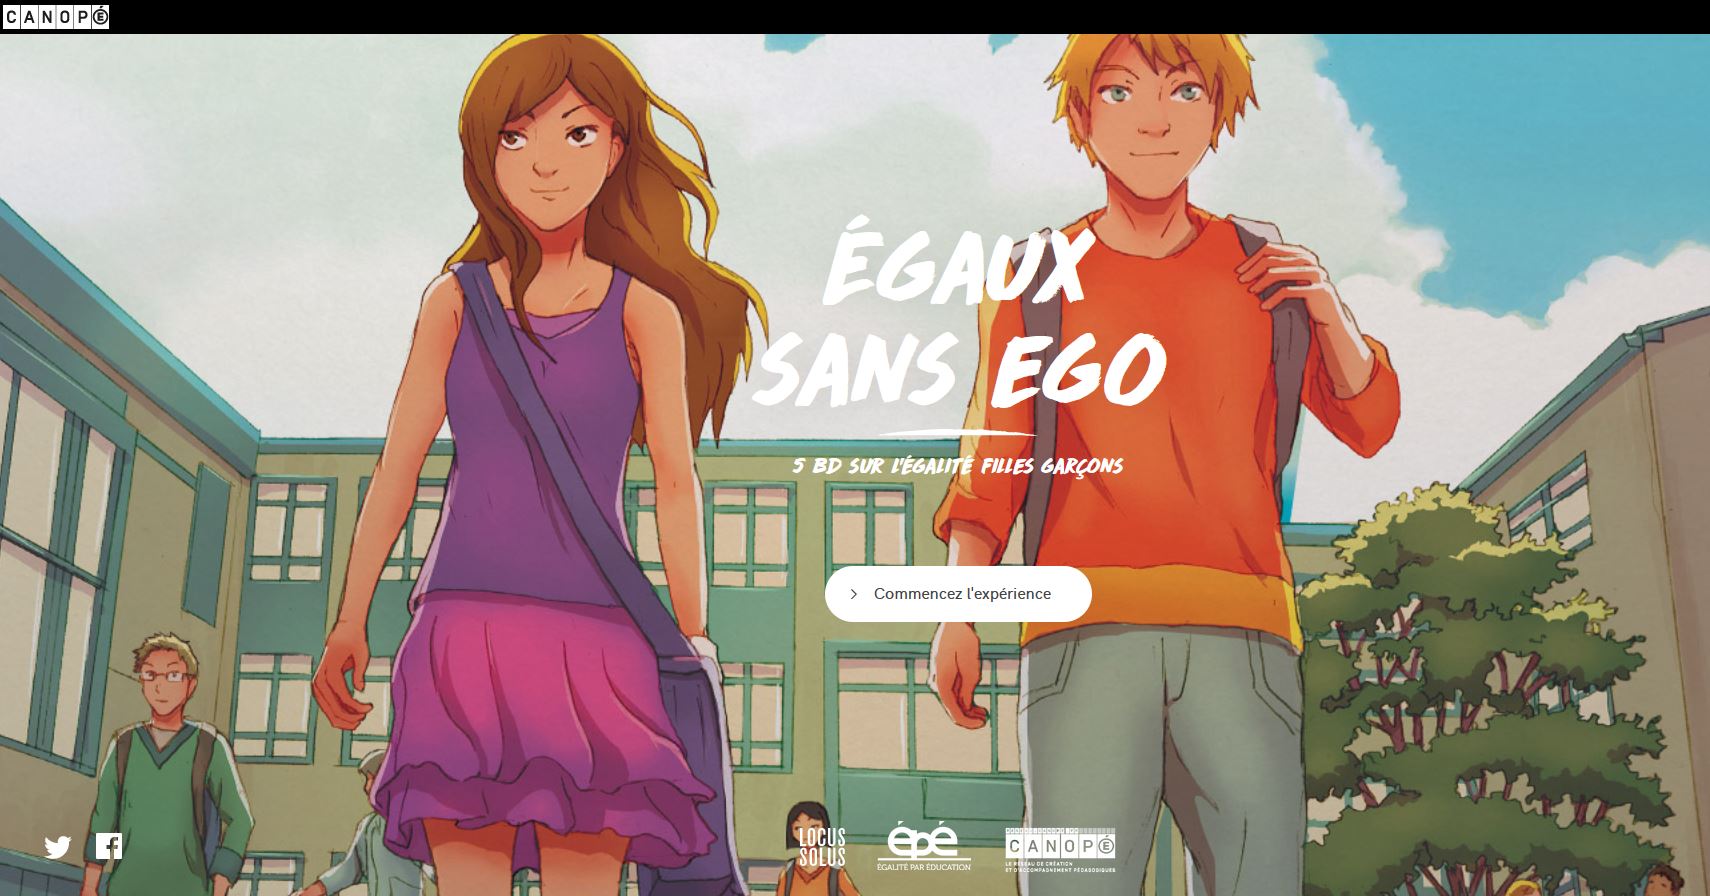 Capture bande dessinée interactive Courses d'orientation, Égaux sans ego, site Canopé